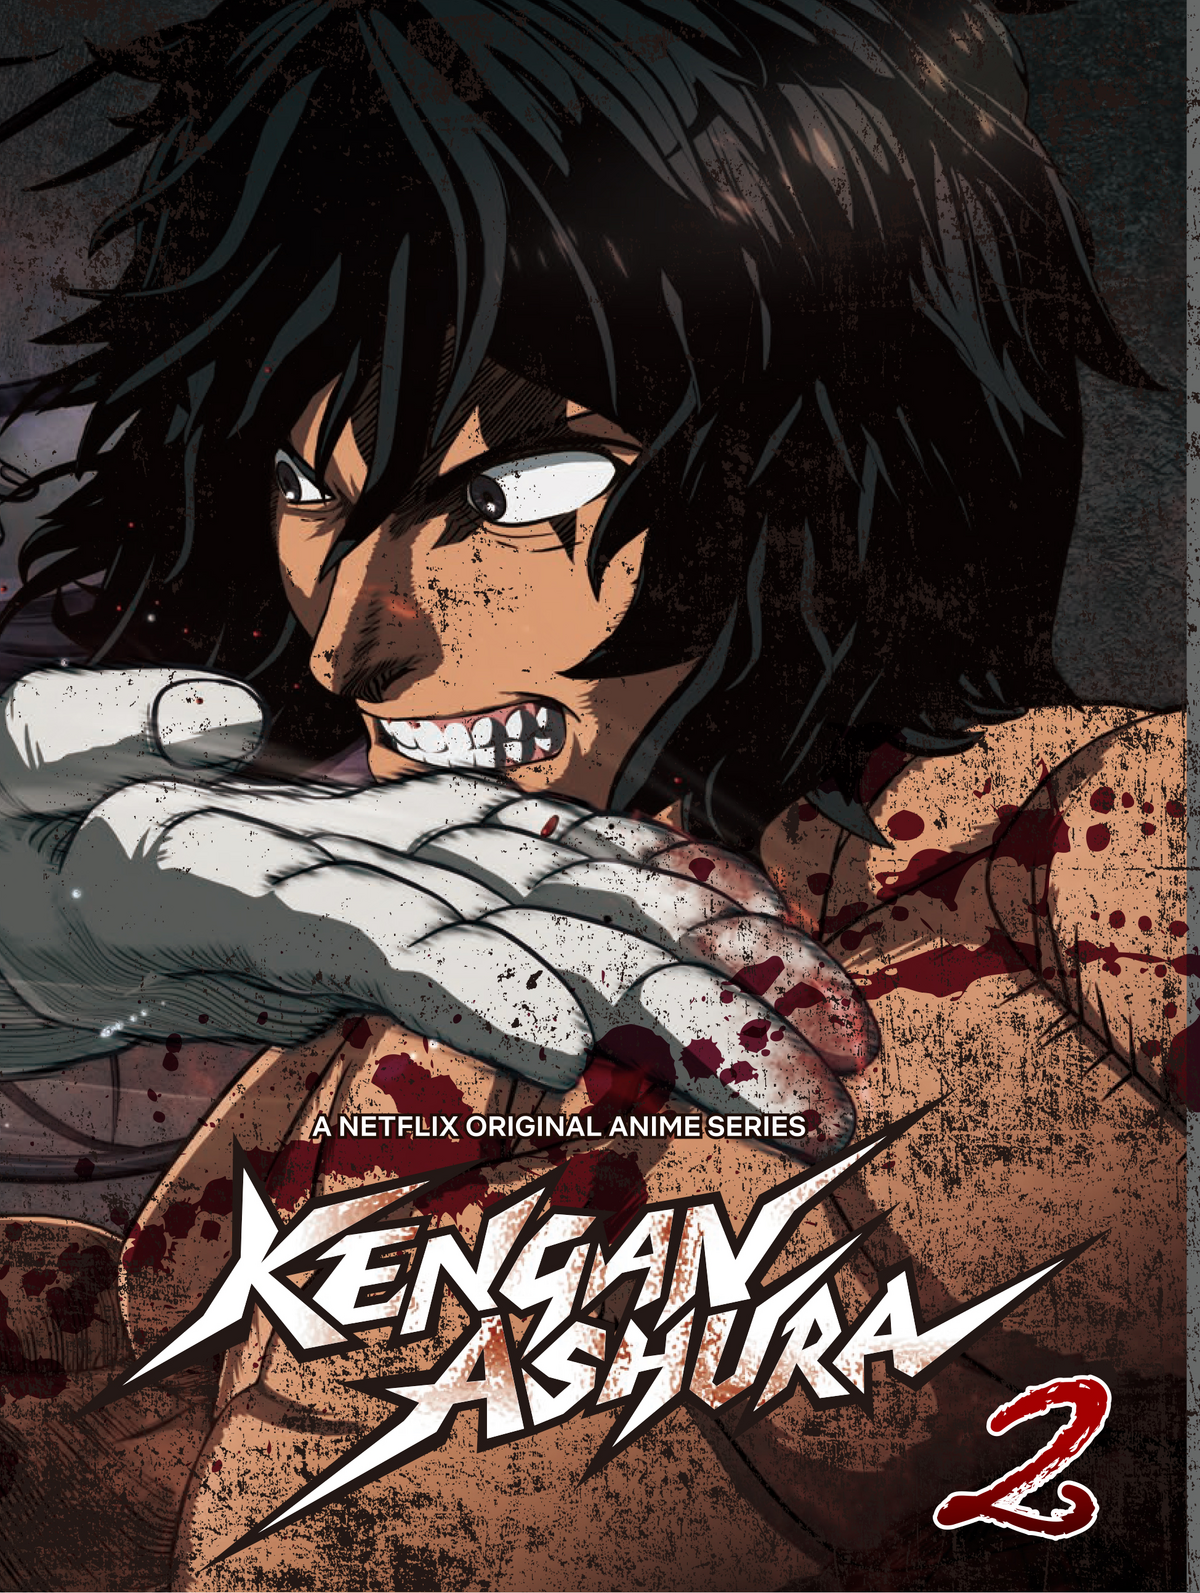 Amazon.com: Kengan Ashura Anime Fabric Wall Scroll Poster (16x23) Inches  [A] Kengan Ashura-5: Posters & Prints